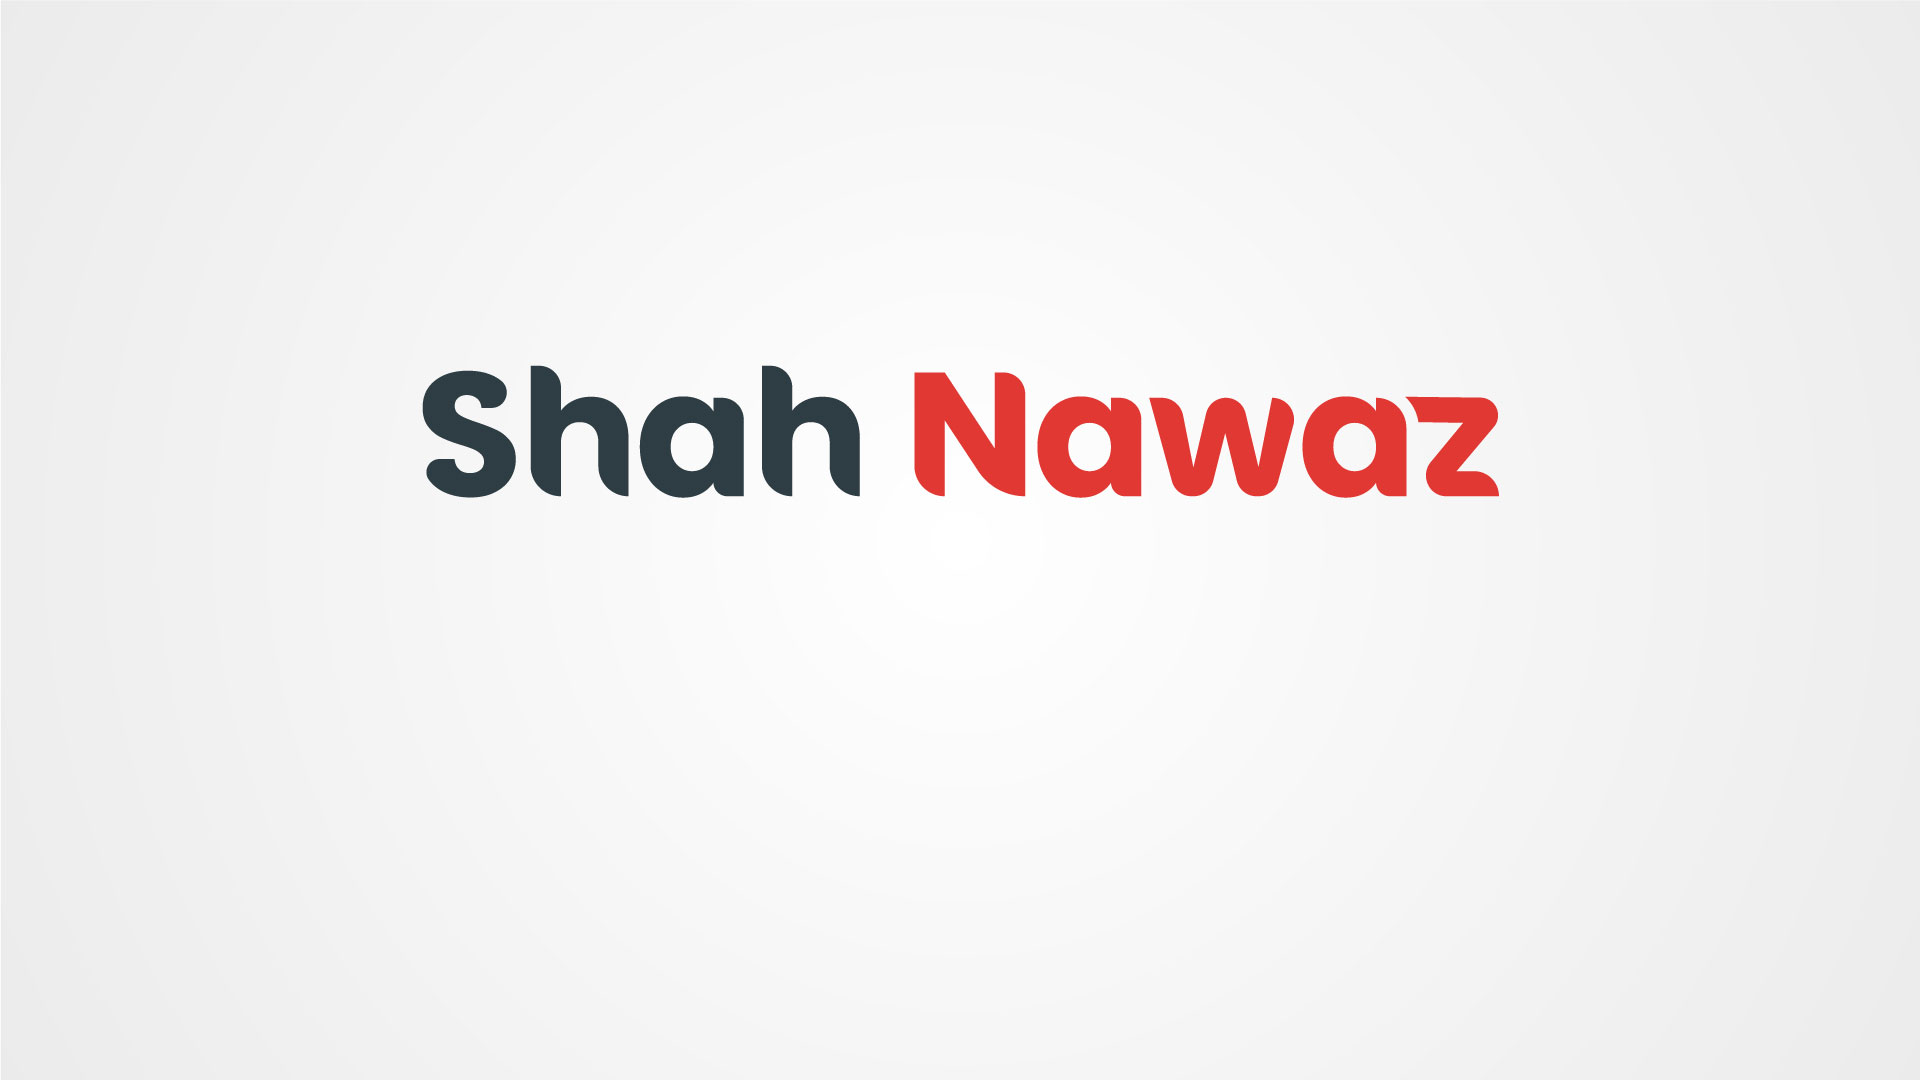 Shah Nawaz